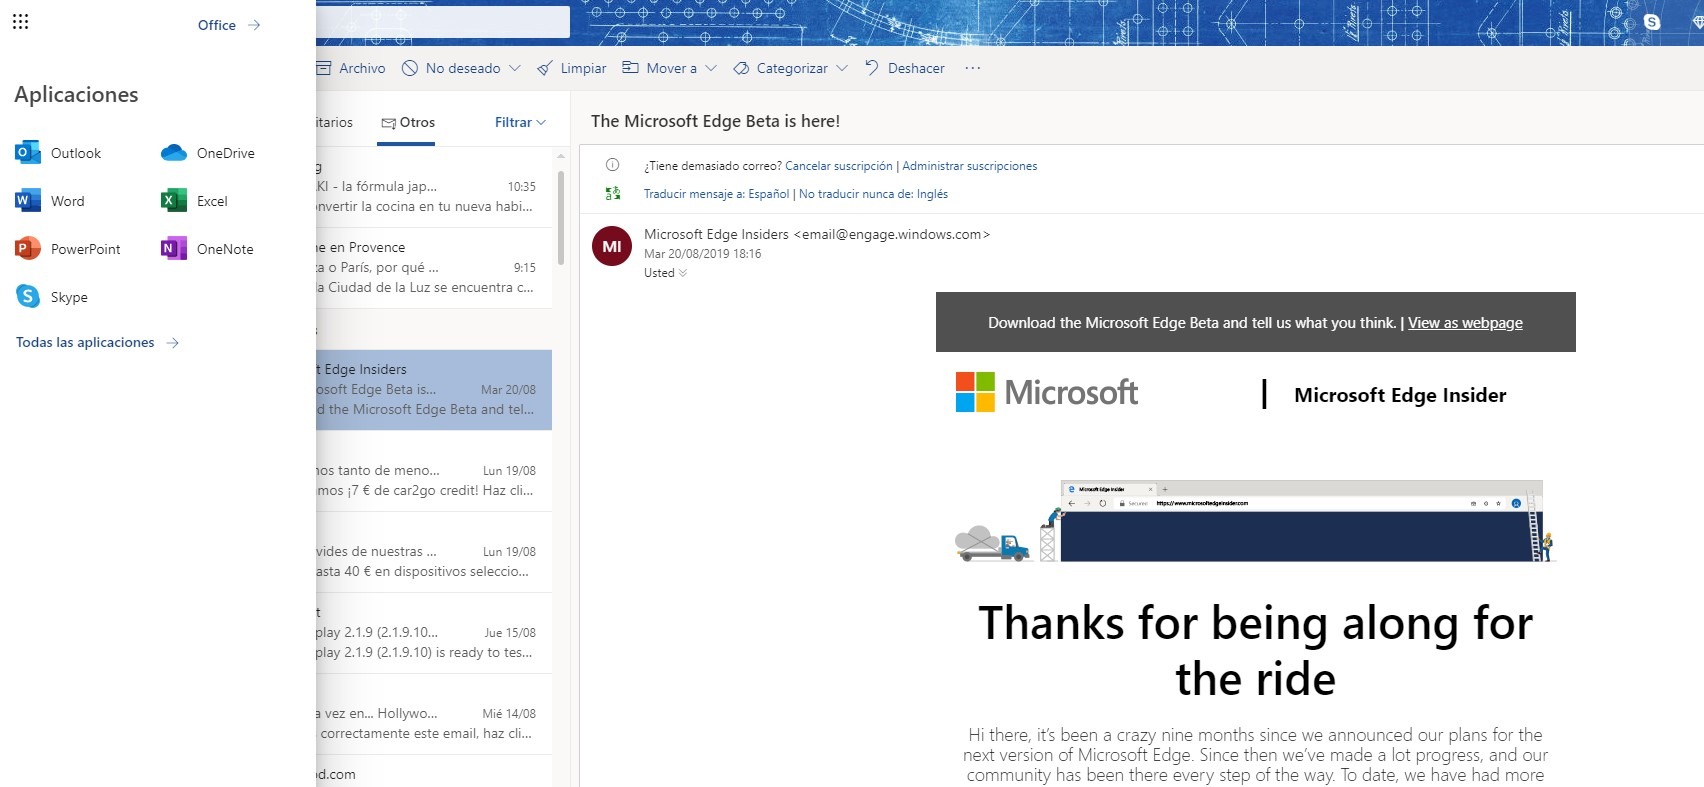 Outlook.com comienza a mostrar nuevos iconos y cambios de diseño